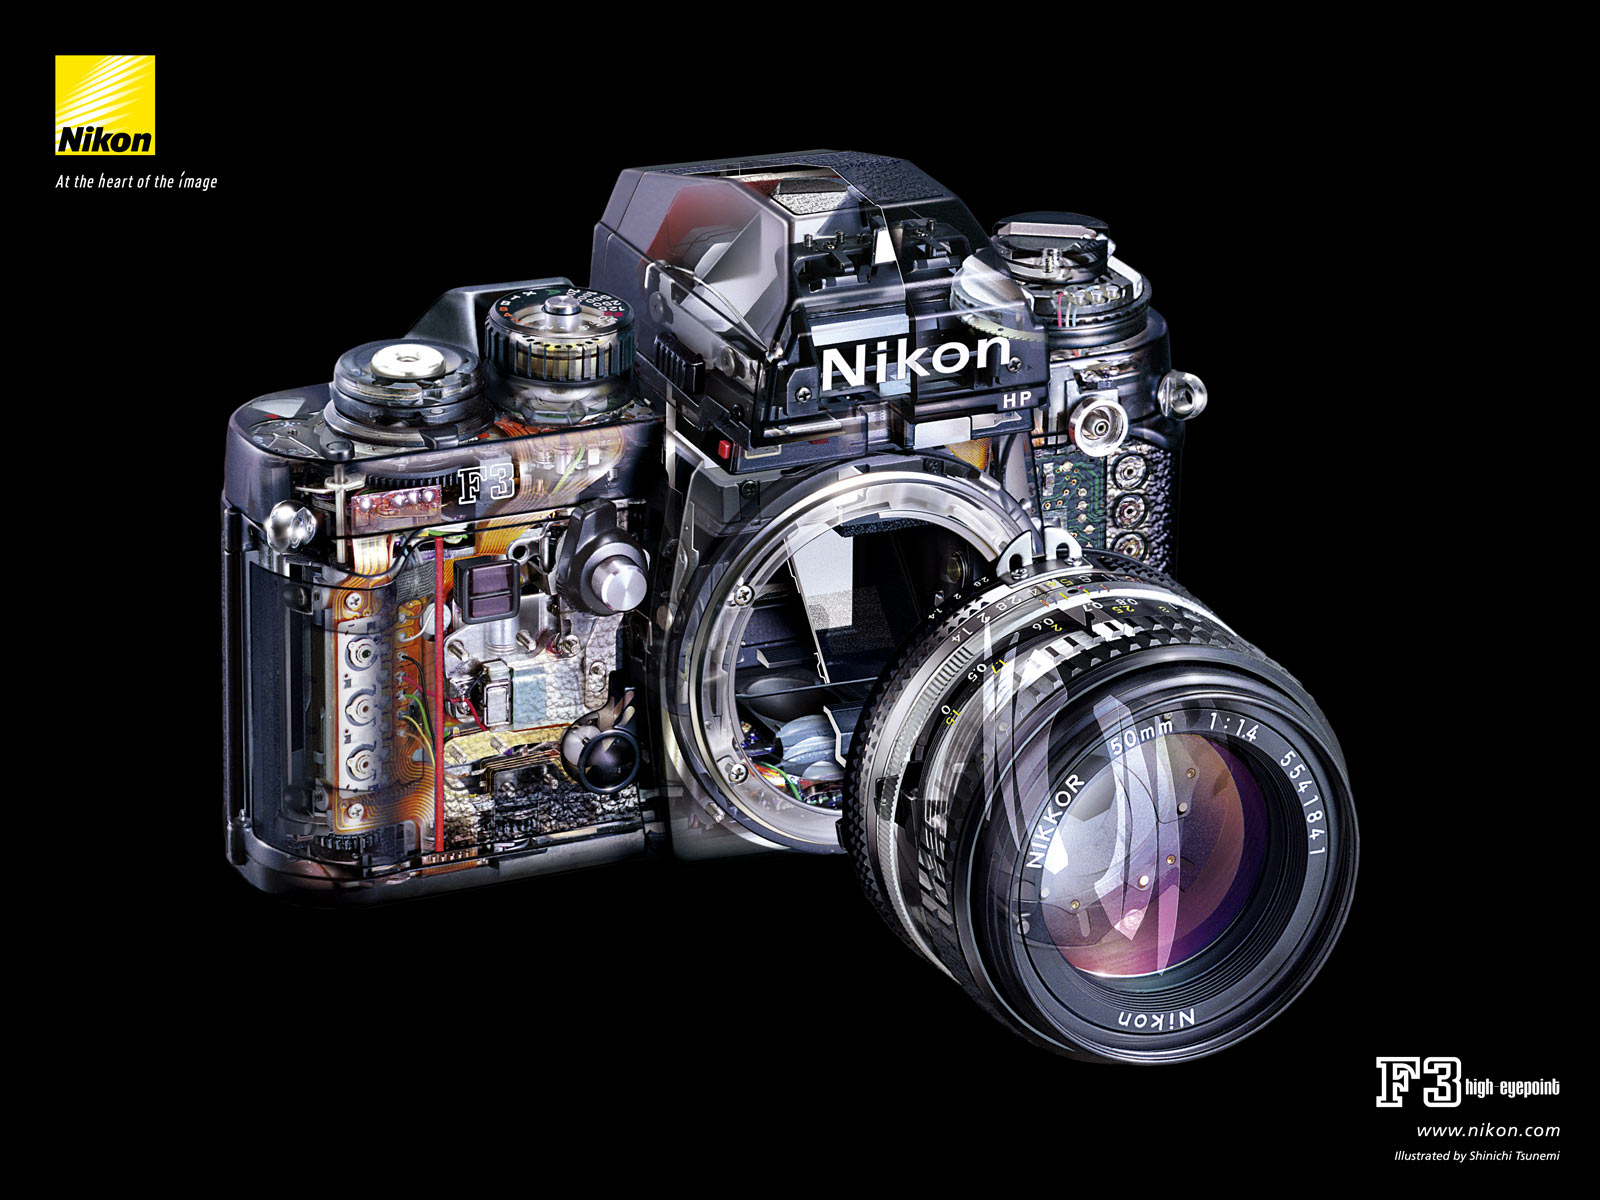 nikon wallpaper hd,camera,cameras & optics,reflex camera,digital camera,single lens reflex camera